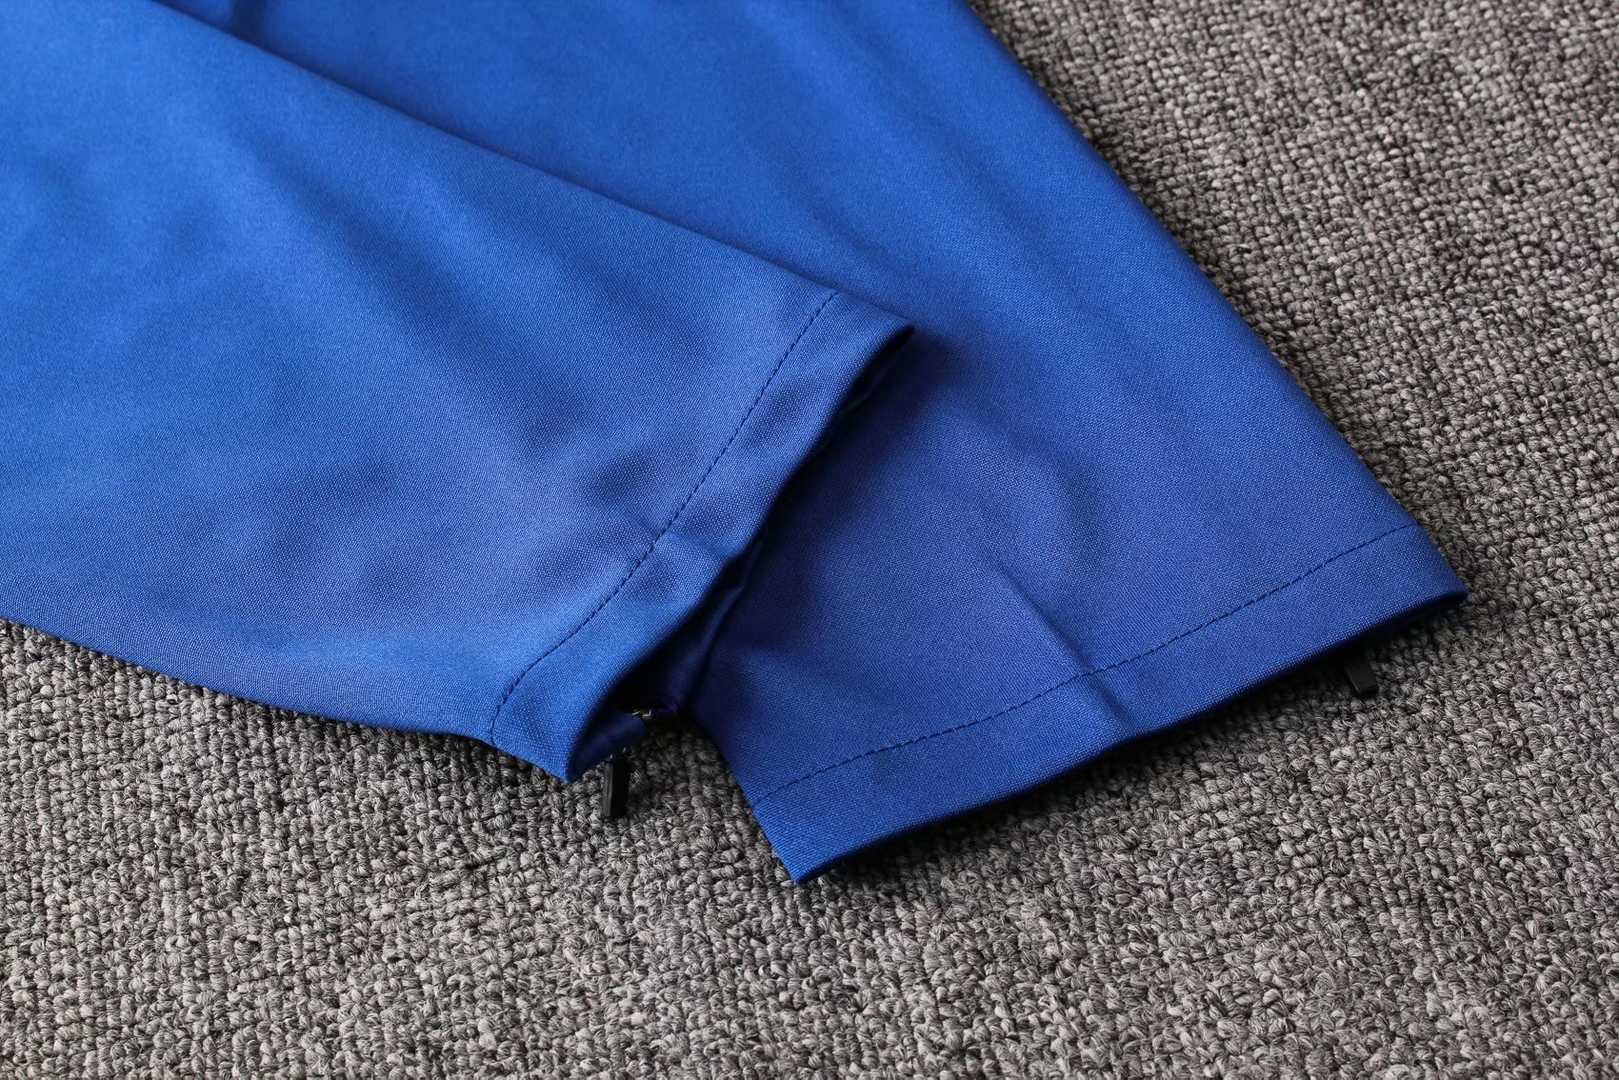 2019/20 Chelsea Blue/White Mens Soccer Training Suit(Jacket + Pants)